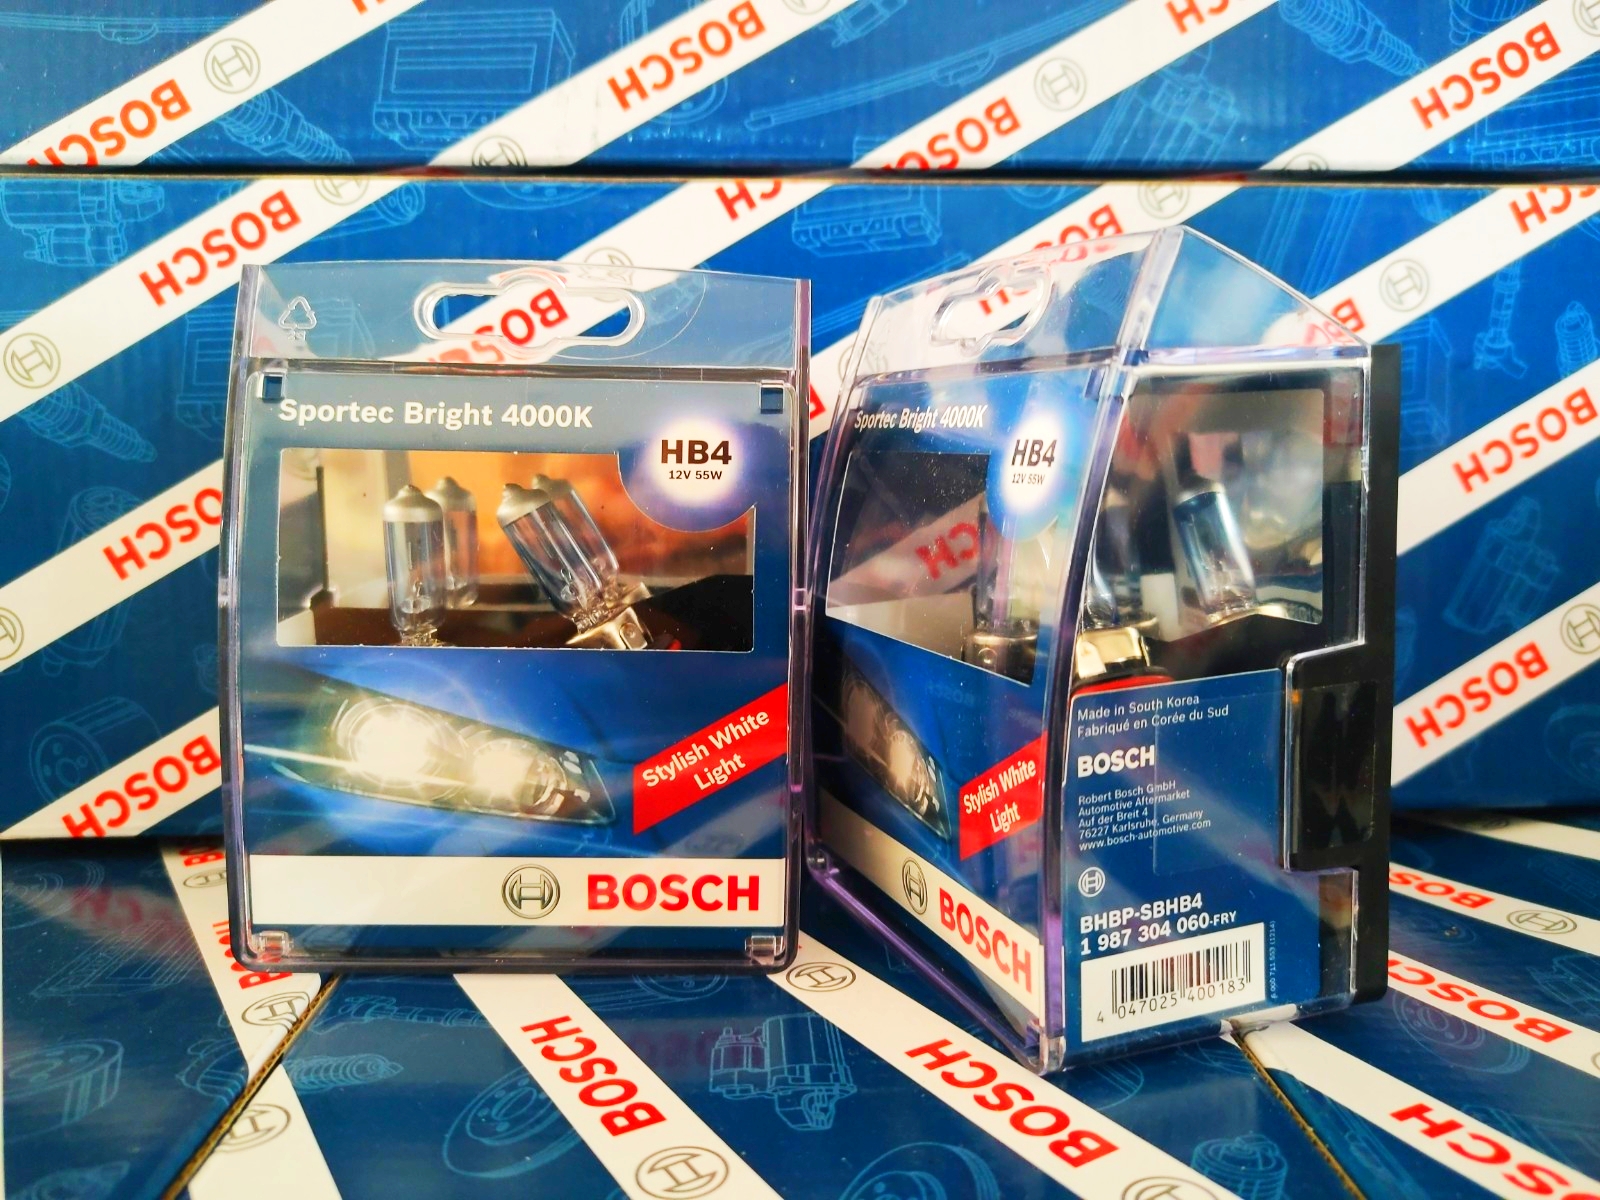 Bóng Đèn Tăng Sáng Bosch 9006 (HB4) 12V 65W Sportec Bright 4000K (Hộp 2 Bóng)